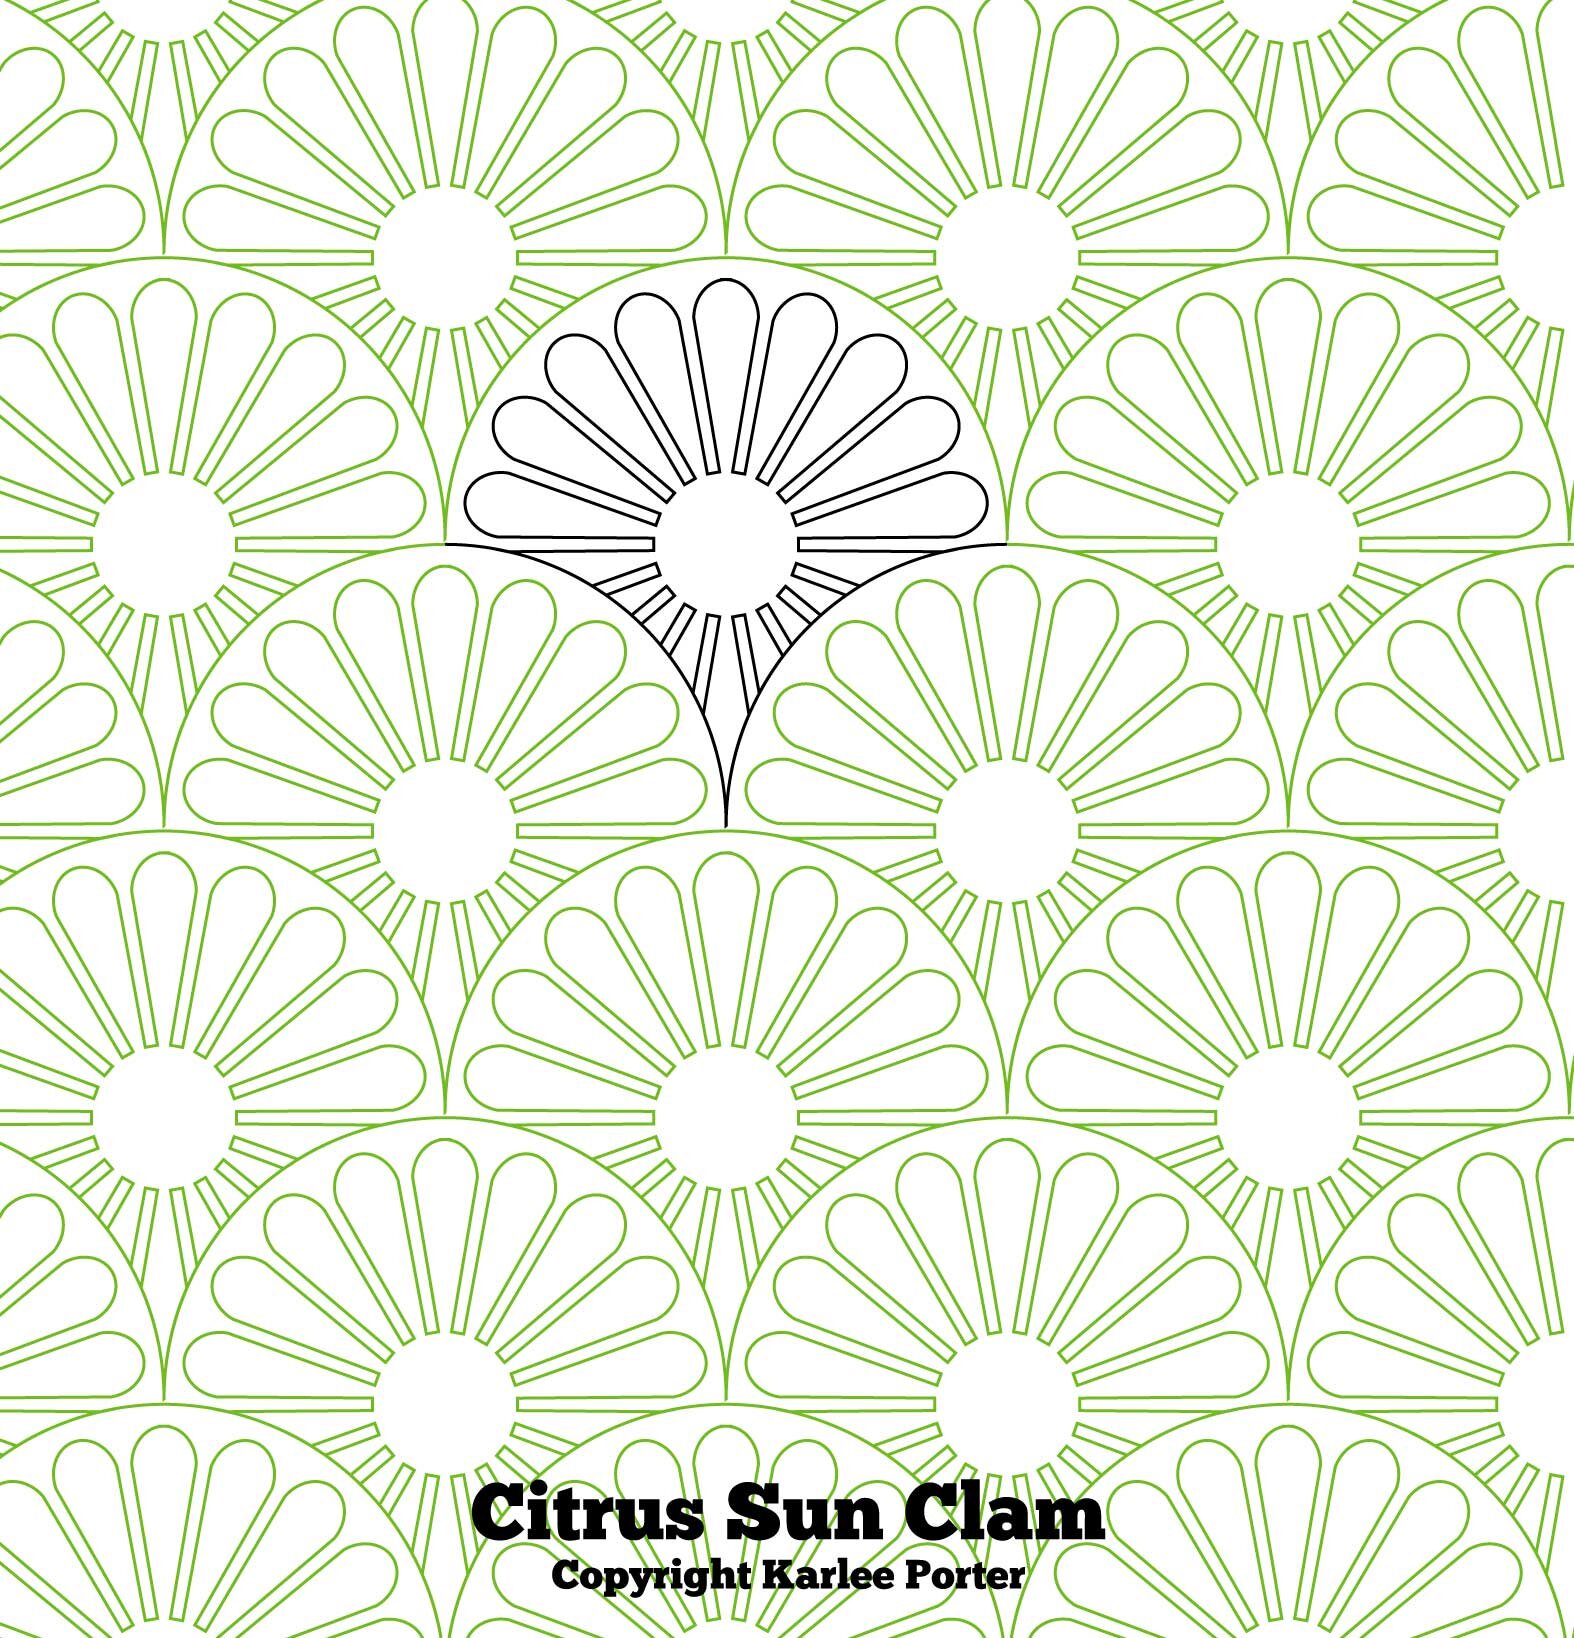 Citrus Sun Clam